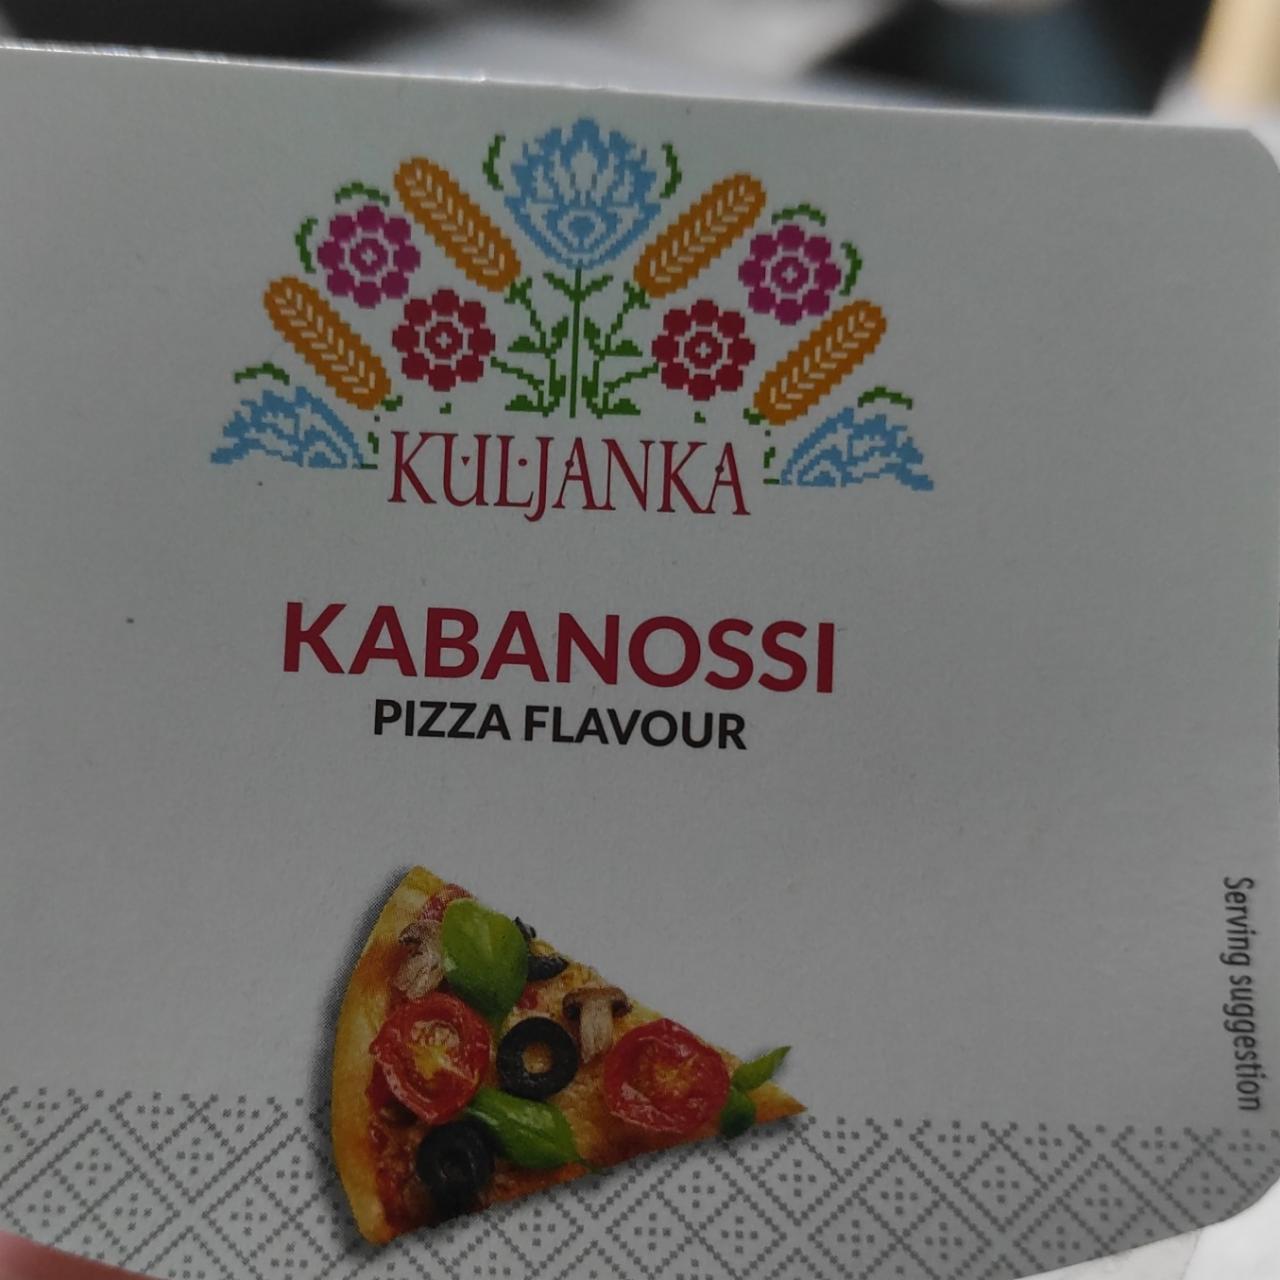 Fotografie - Kabanossi Pizza Flavour Kuljanka